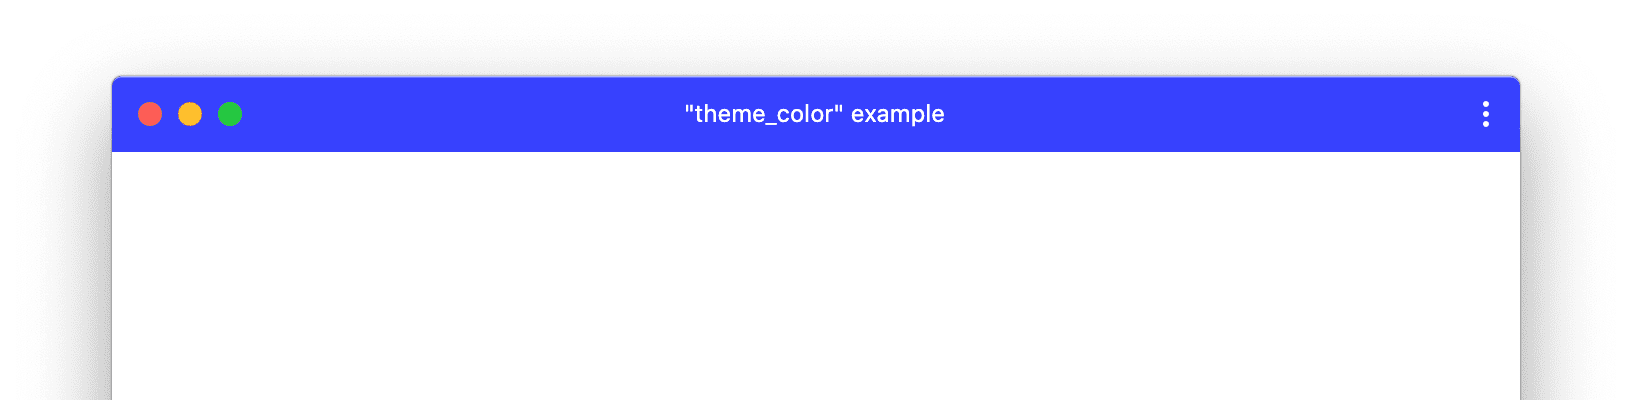 カスタムの Theme_color が設定された PWA ウィンドウの例。